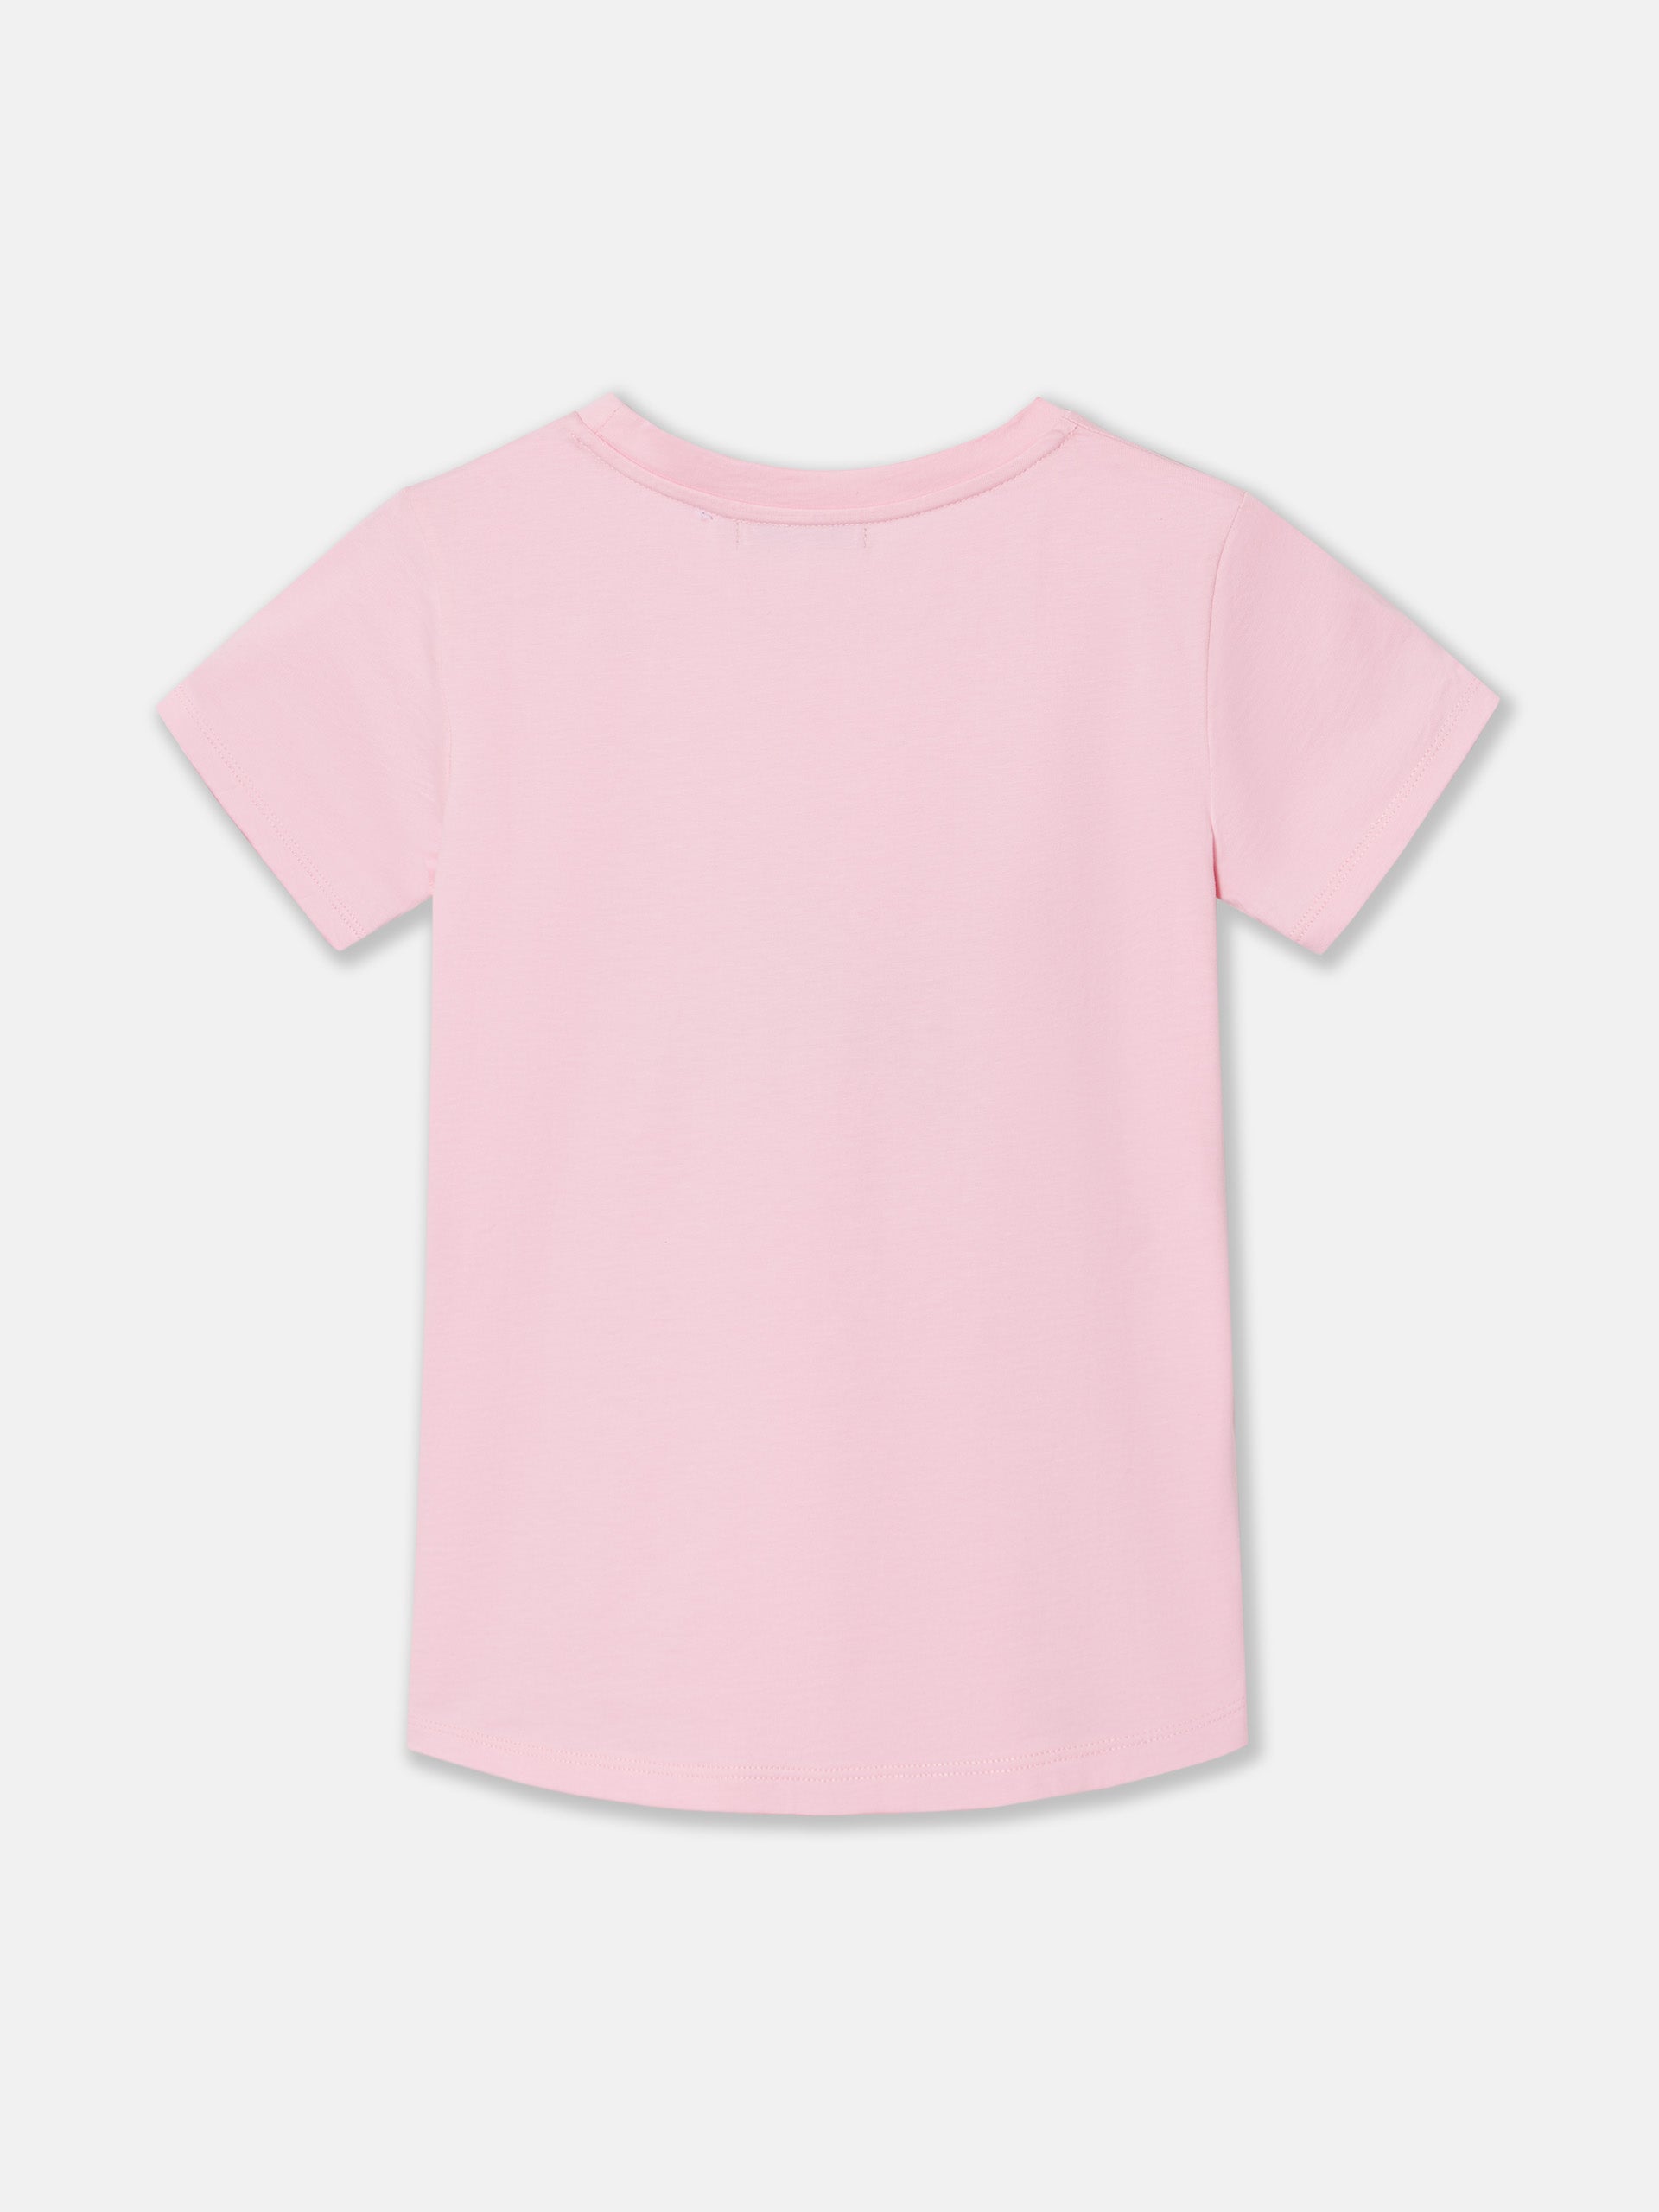 Camiseta woman clasica rosa